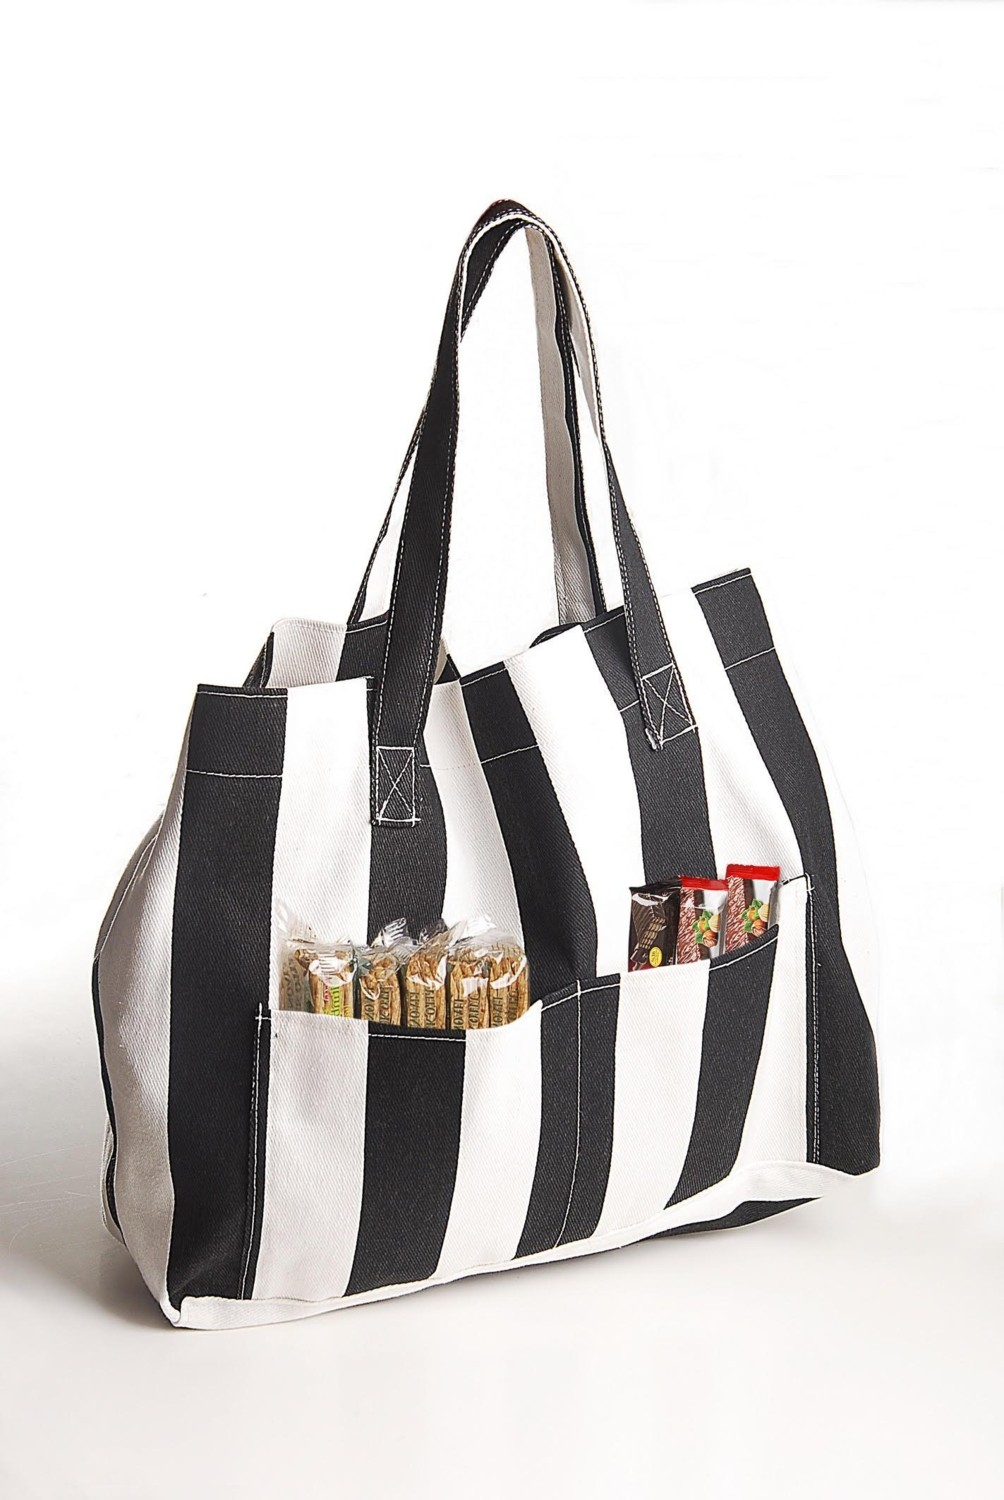 Женская холстовая сумка Himarry с двумя карманами для пляжа черного цвета.